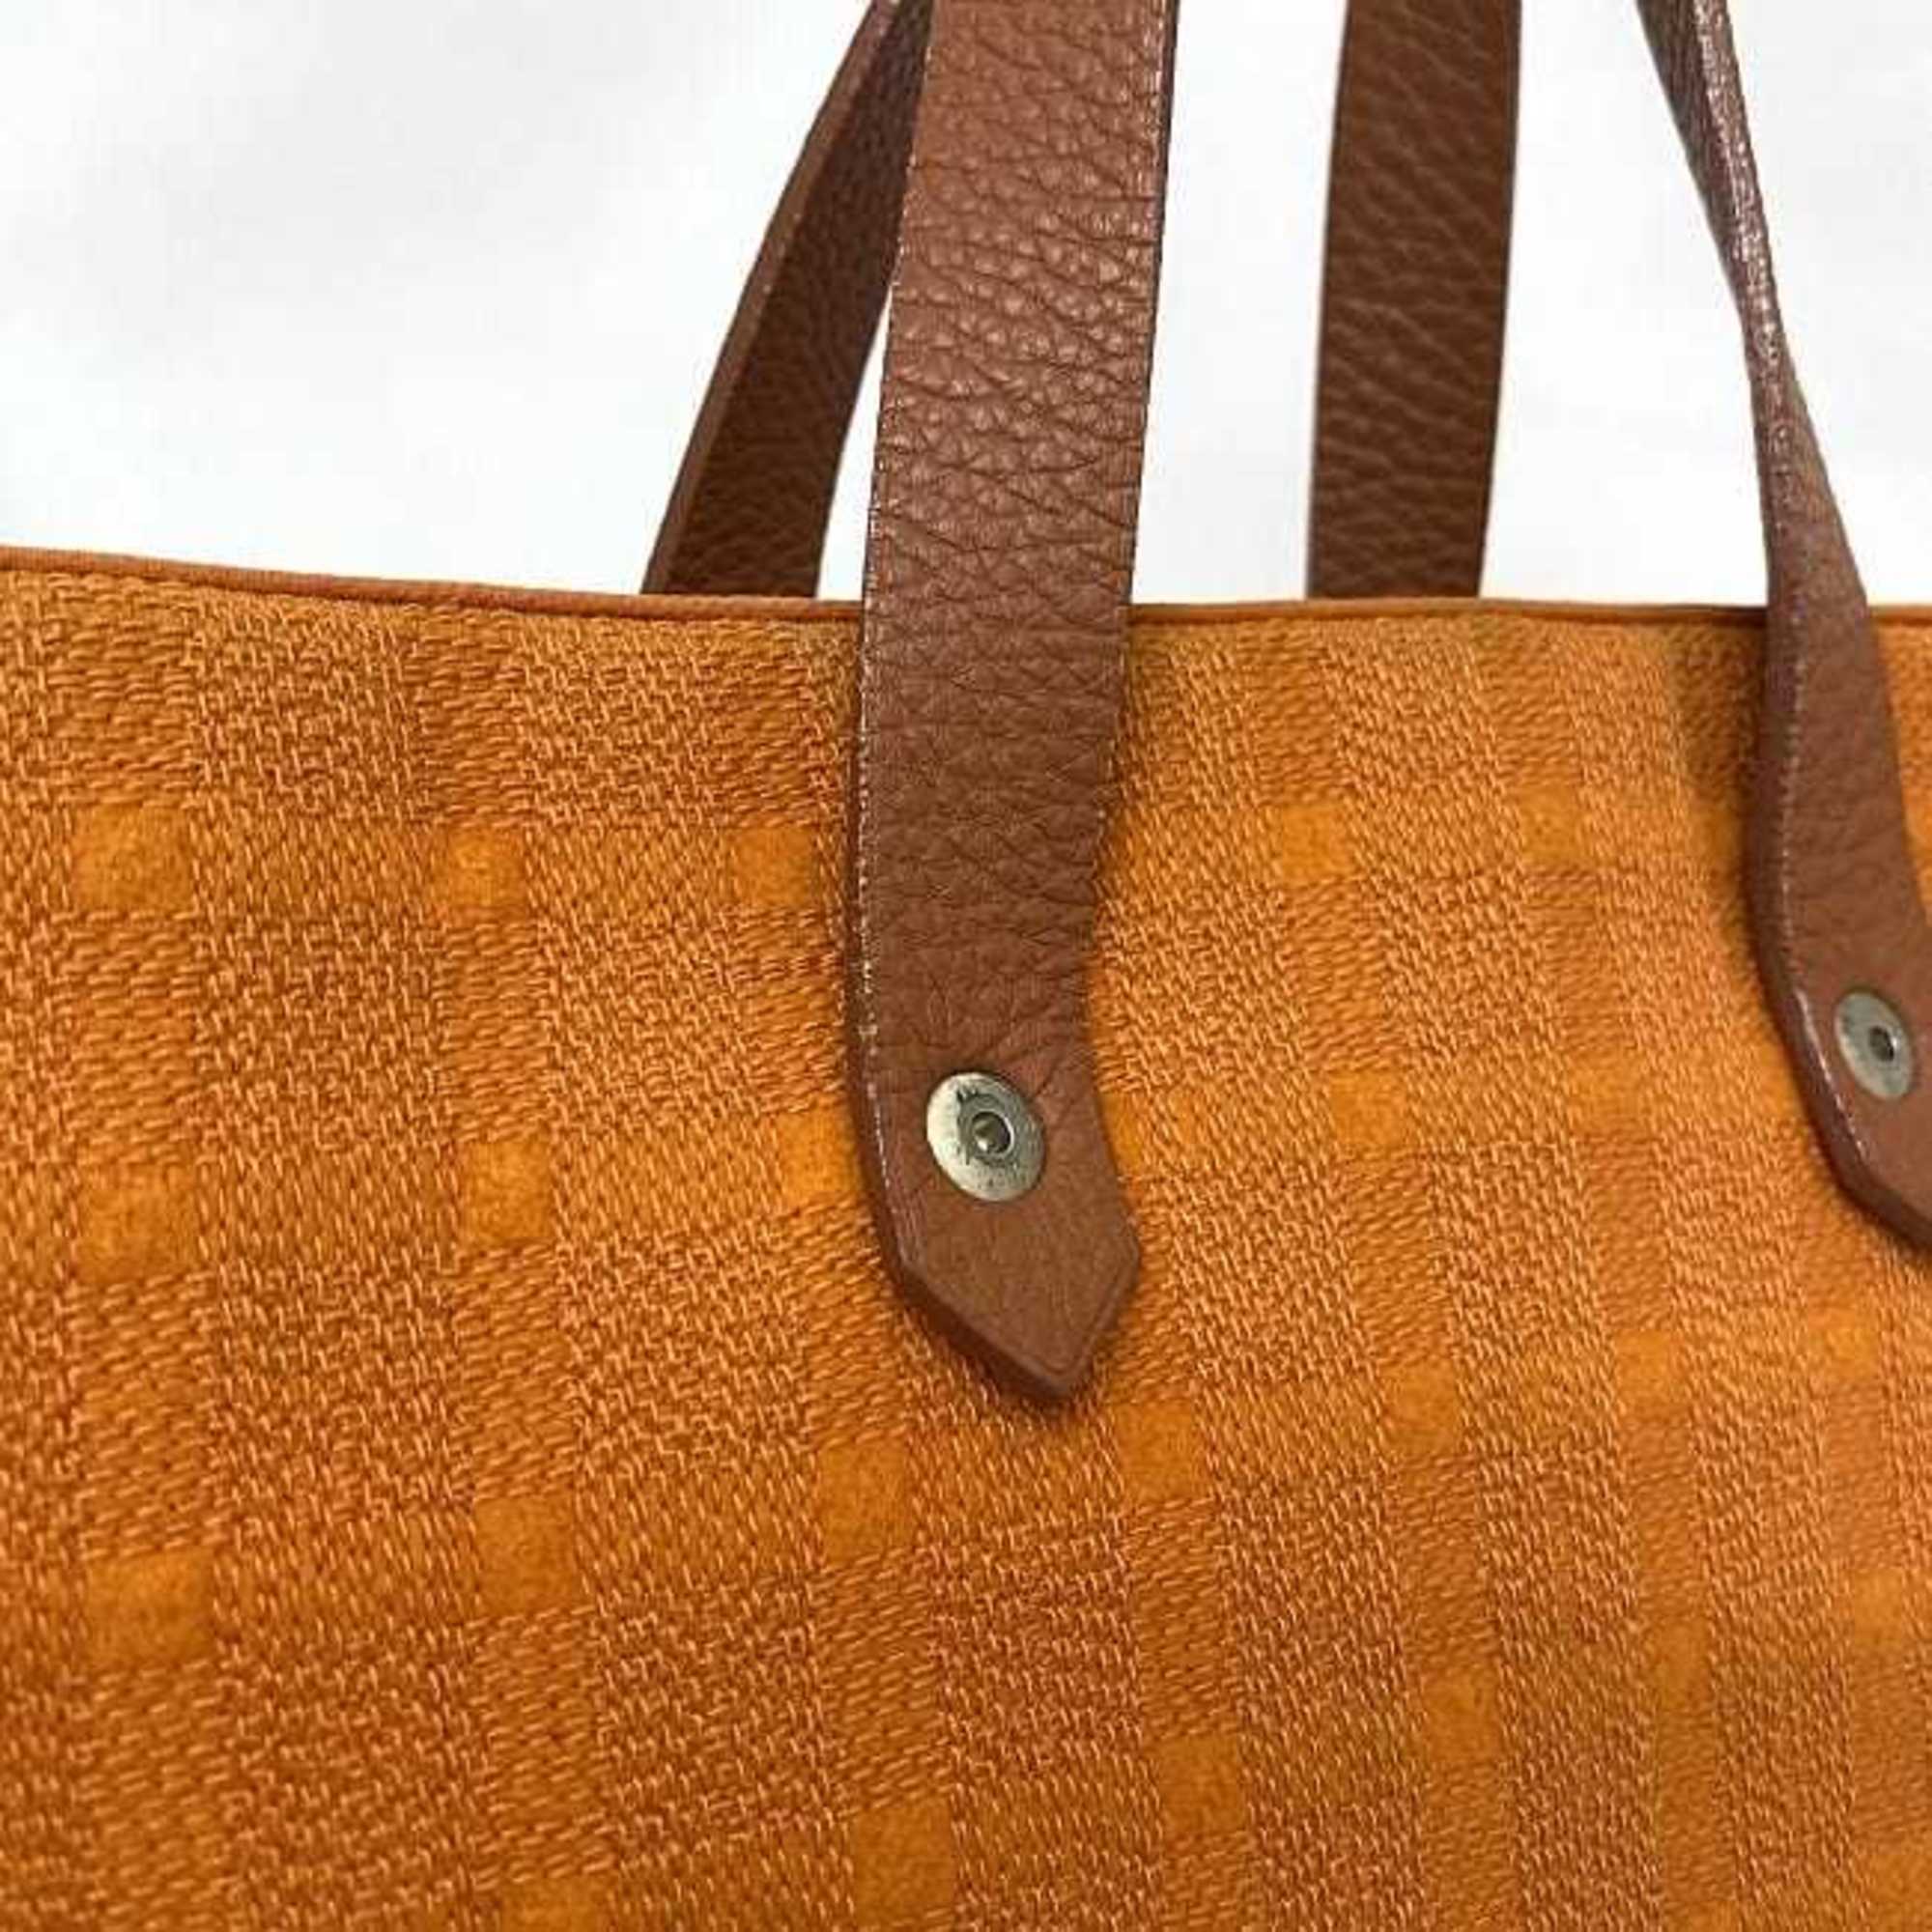 Hermes Amedaba Tote Bag Orange Brown Canvas Leather HERMES Women's